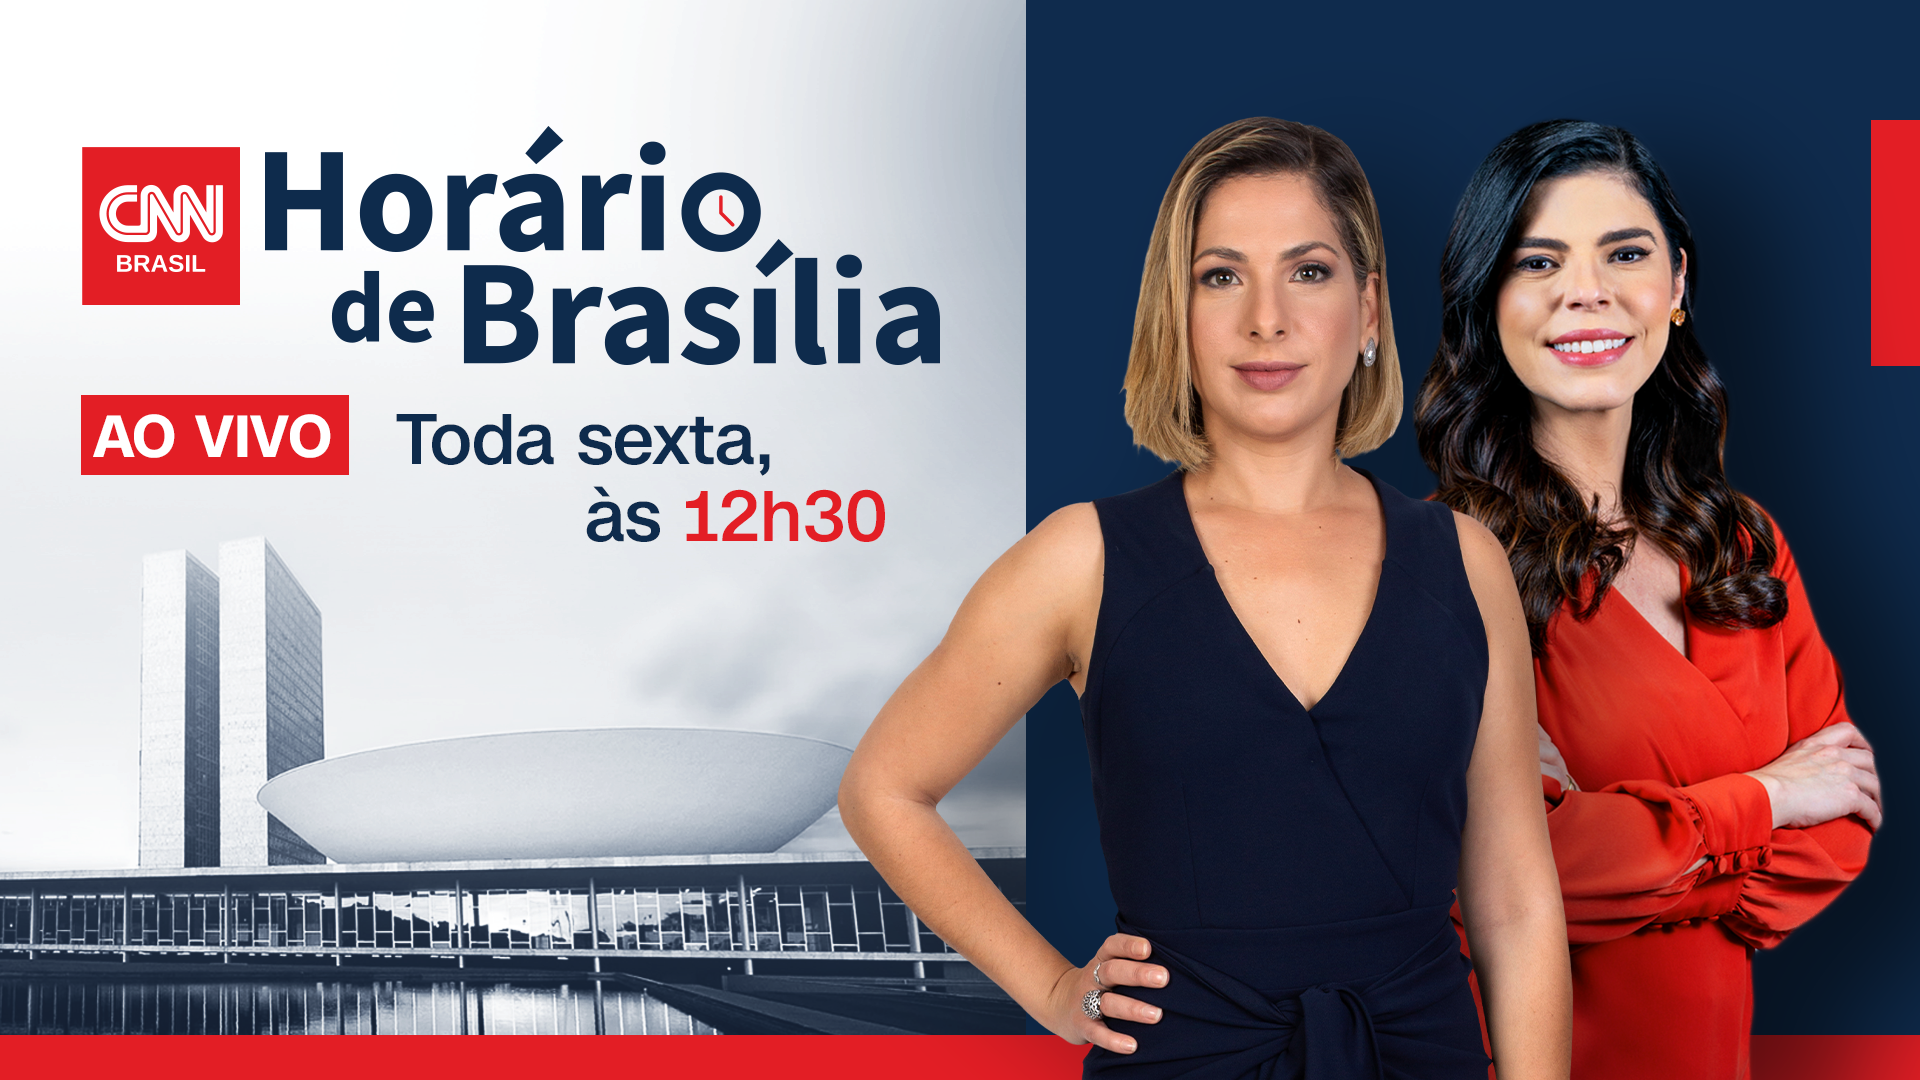 Horário de Brasília ao vivo, com Daniela Lima e Renata Agostini